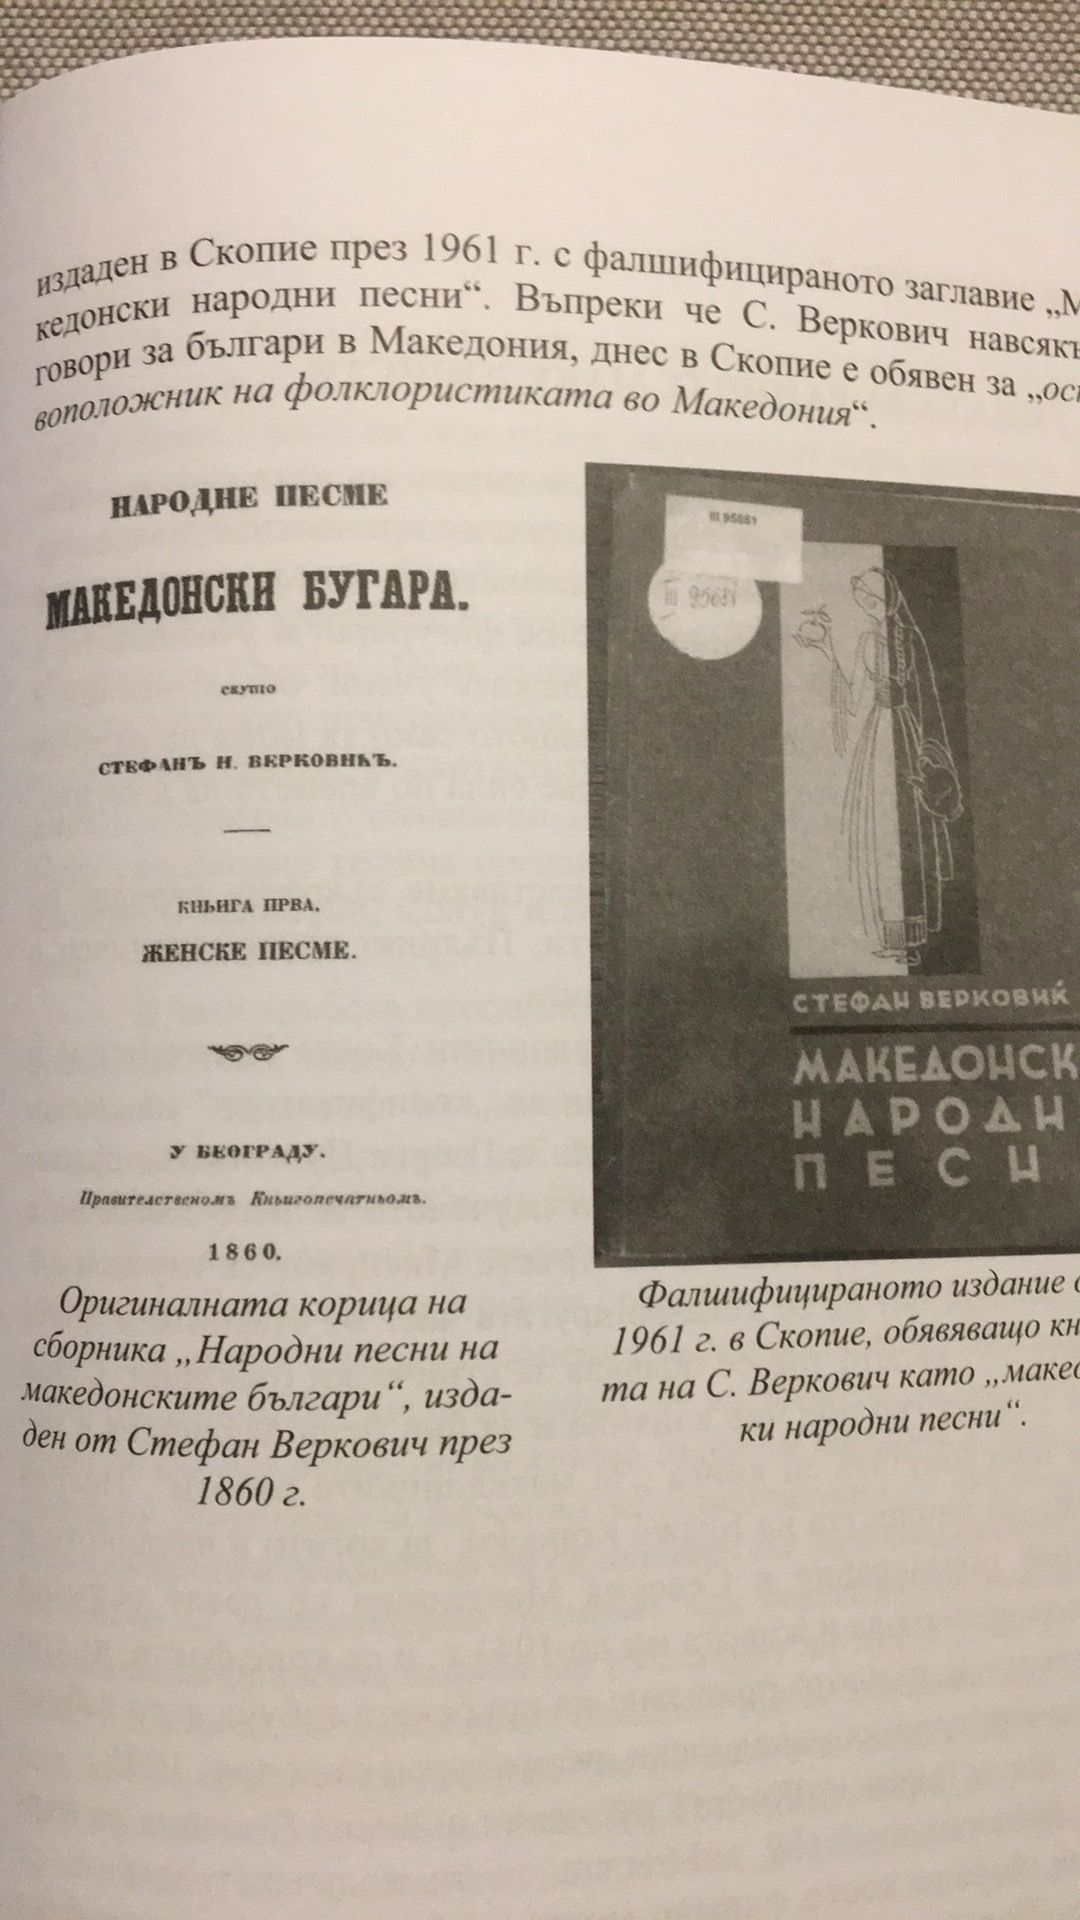  Стефан Веркович оригинал и фалшифицирано издание 